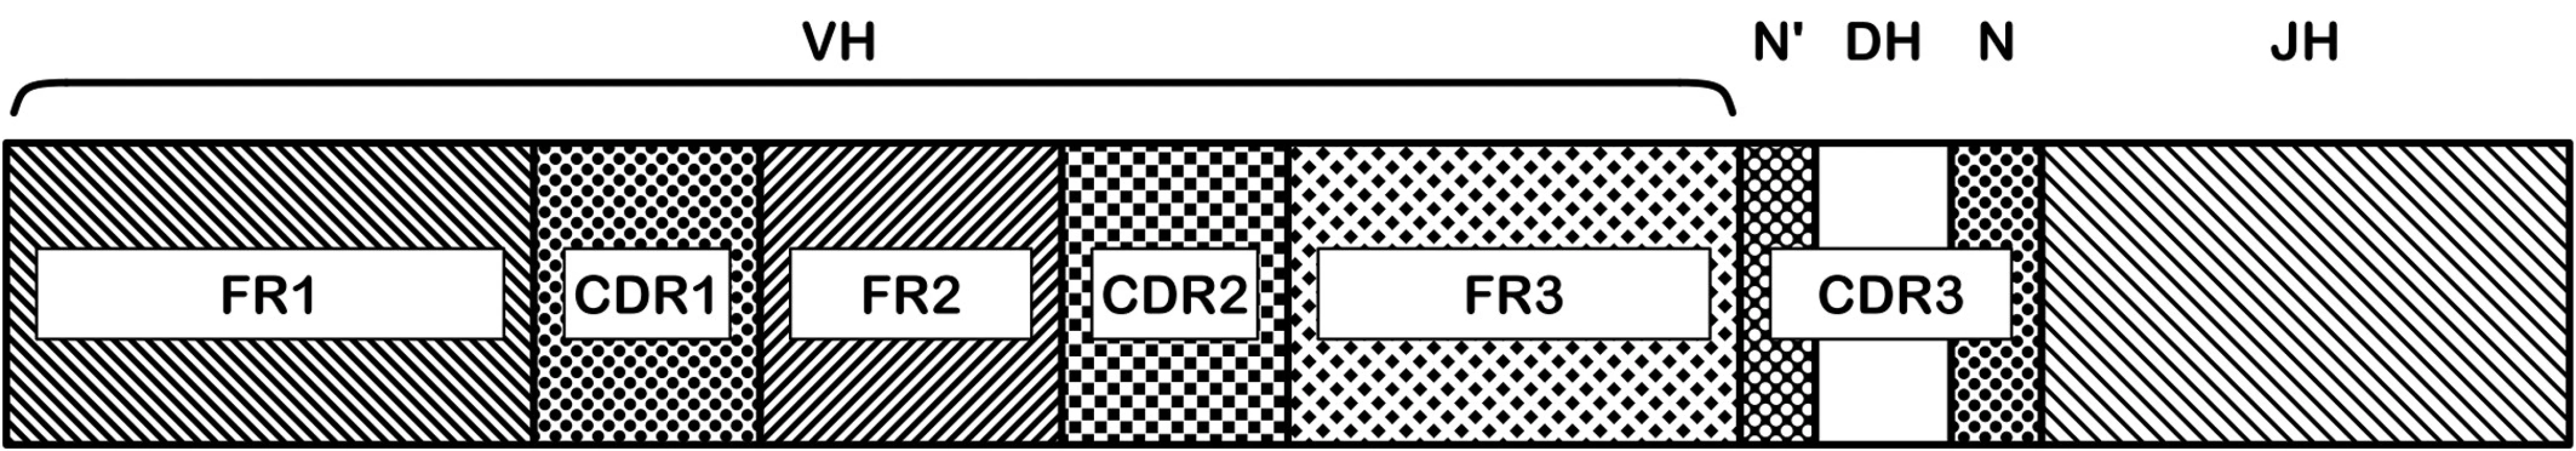 Oblasti genu těžkého řetězce imunoglobulinu.
Na nukleotidové sekvenci přeskupených VDJ subgenů je rozeznáváno několik funkčně významných oblastí: FR1-3 a CDR1-3. Aminokyseliny kódované v CDR (complementarity determining regions) oblastech jsou zodpovědné za vazbu protilátky na antigen, sekvence těchto oblastí má tedy největší význam pro specifitu výsledné protilátky. CDR3 oblast je nejvíce variabilní, zahrnuje D subgen a náhodně včleněné nukleotidy (N, N‘) ve spojích V-D a D-J.